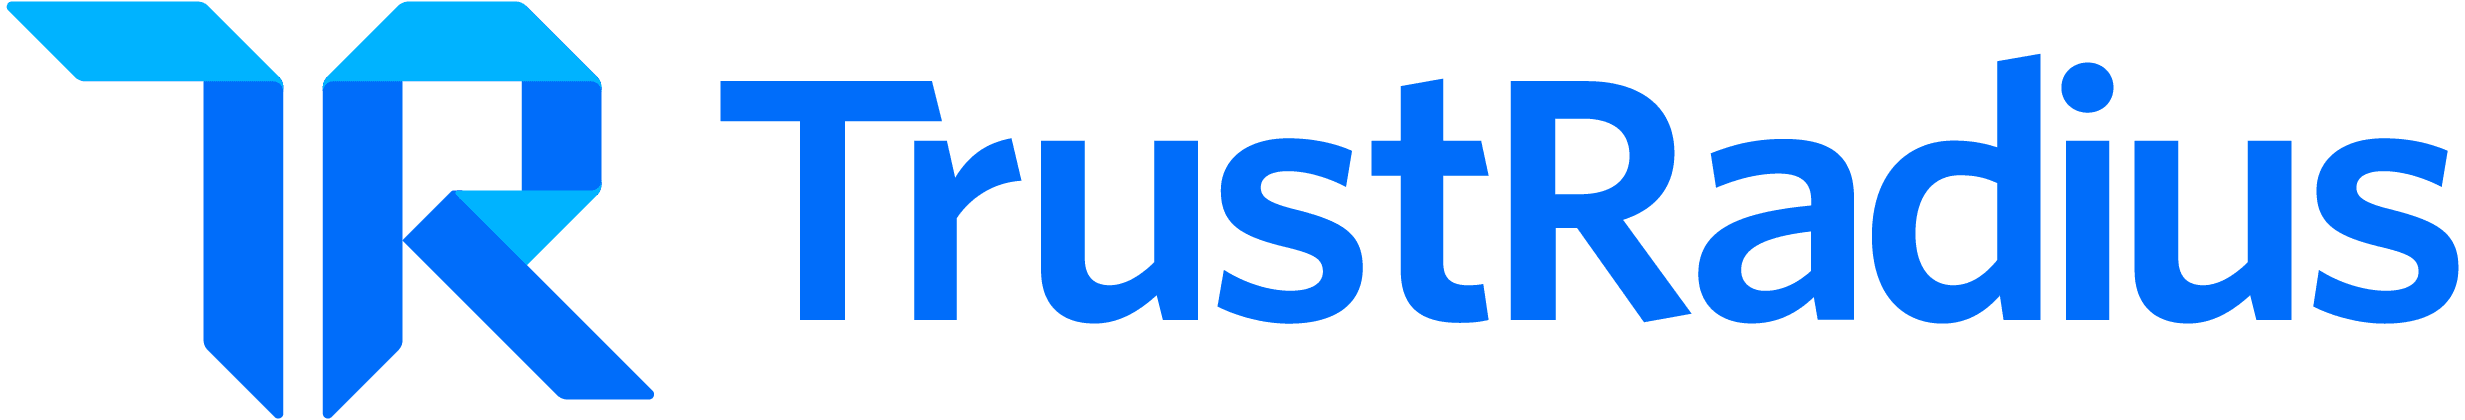 TrustRadius company logo